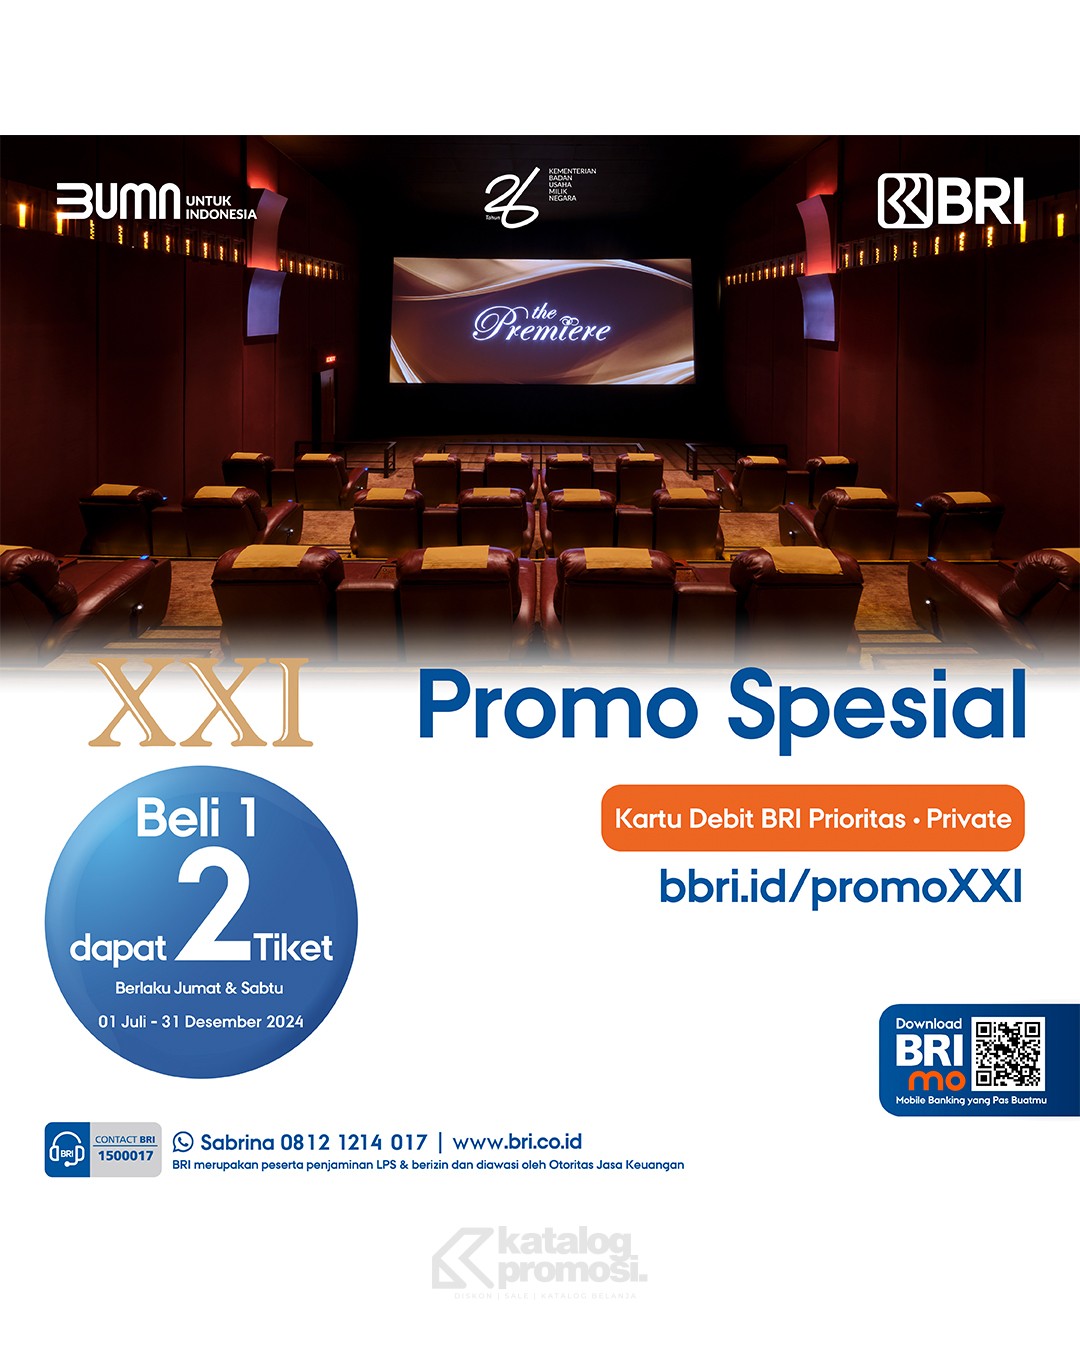 Promo CINEMA XXI BRI - BELI 1 GRATIS 1 untuk Tiket The Premiere XXI berlaku mulai tanggal 05 Juli - 31 Desember 2024